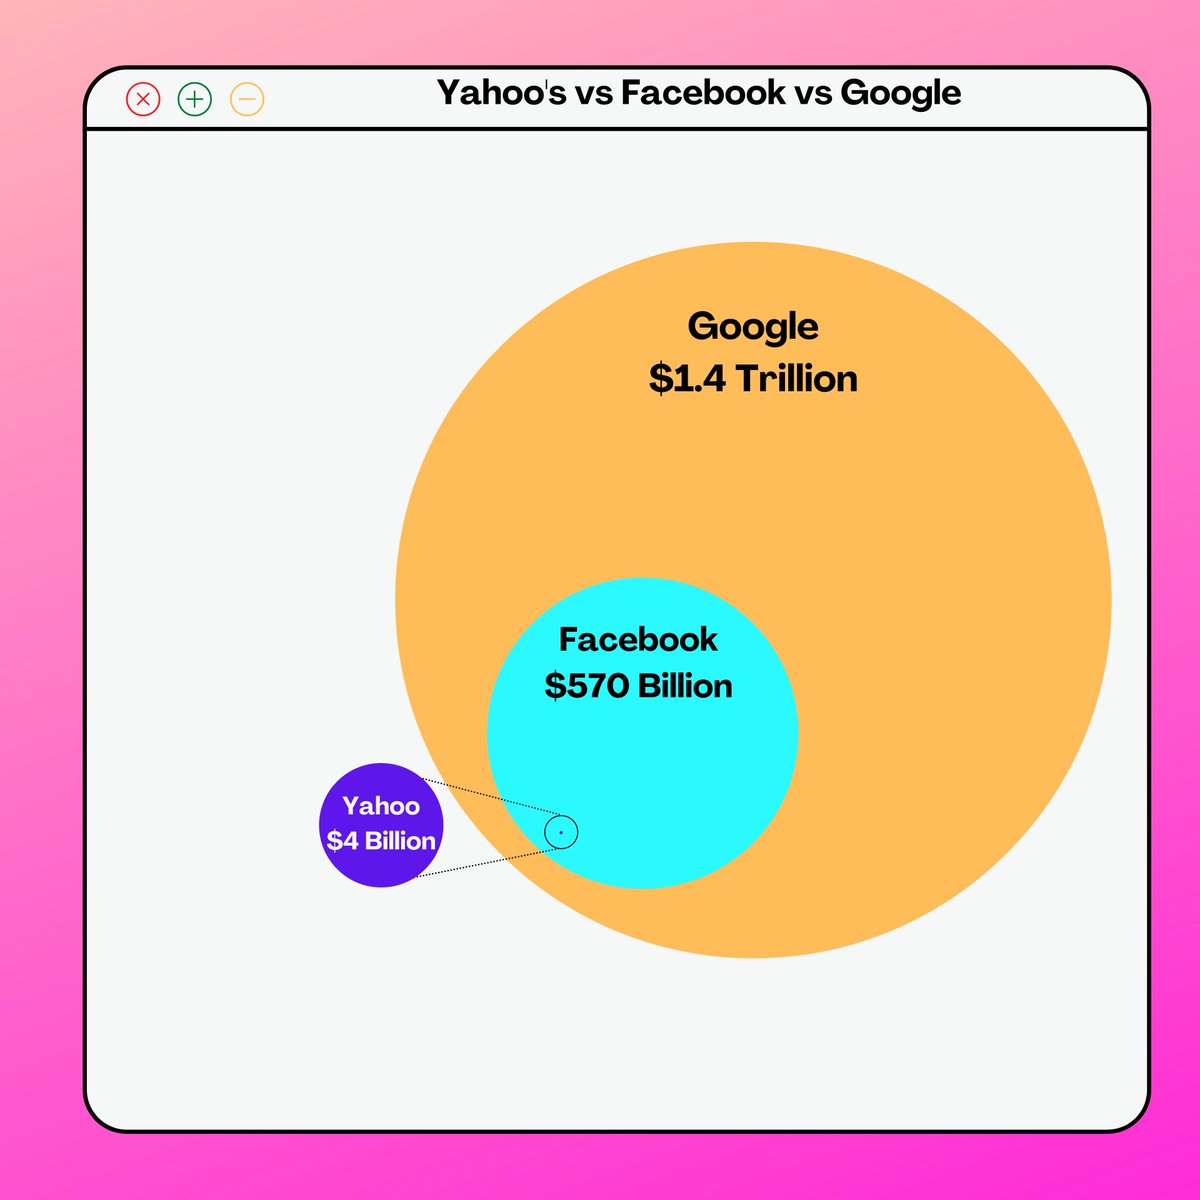 Yahoo vs Facebook vs Google